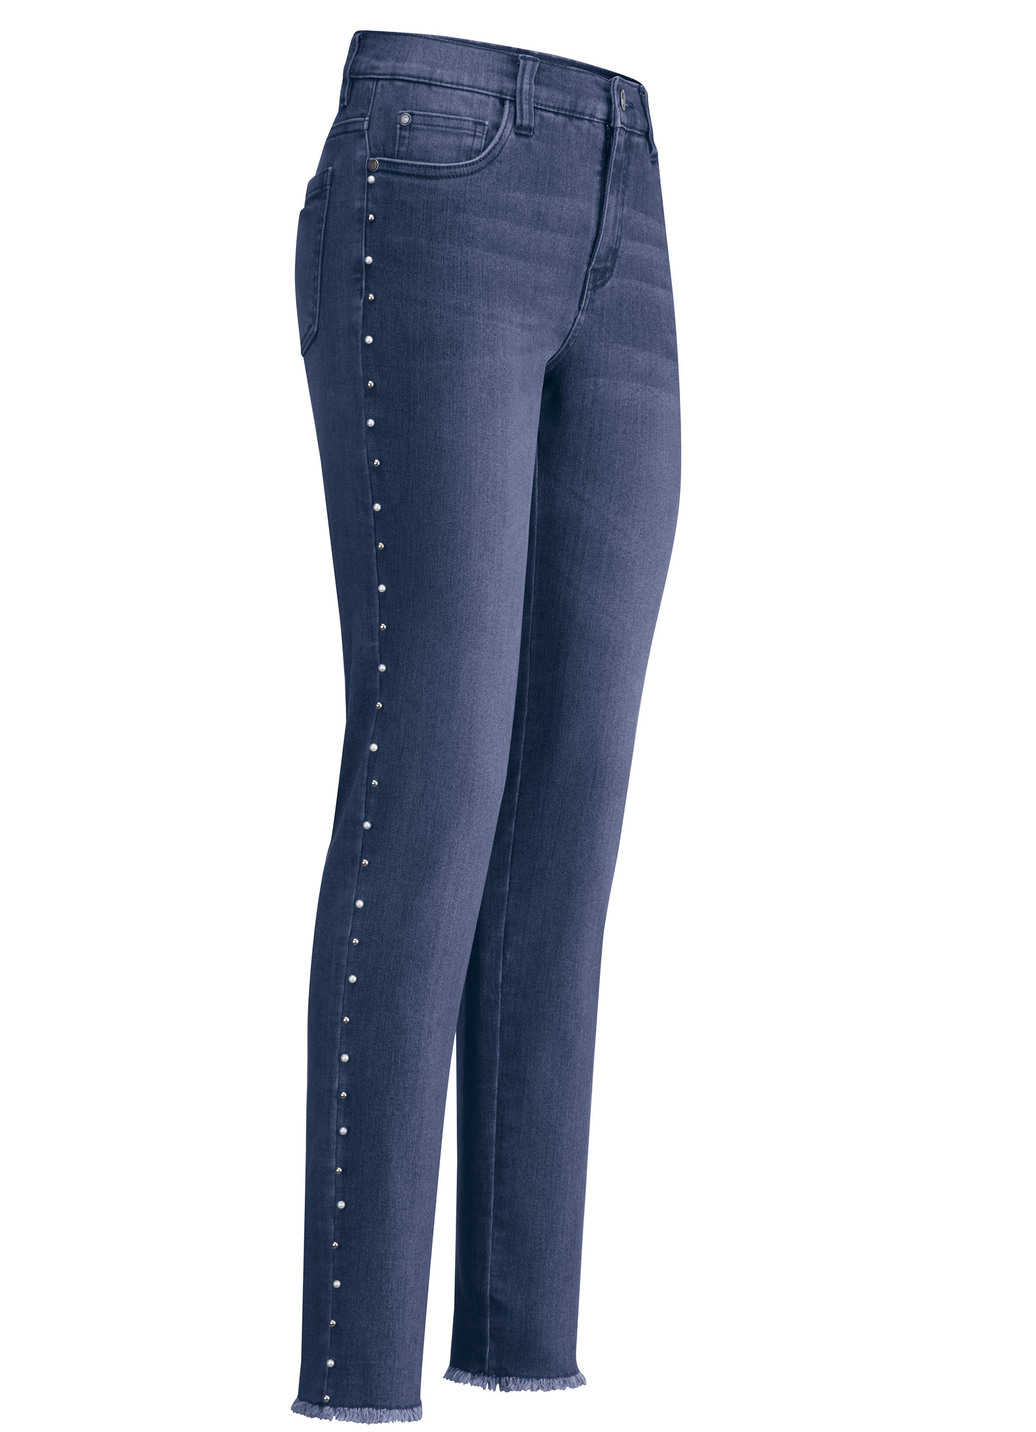 Edel-Jeans mit tollen Zierperlen, Dunkelblau, Größe 38 von BADER